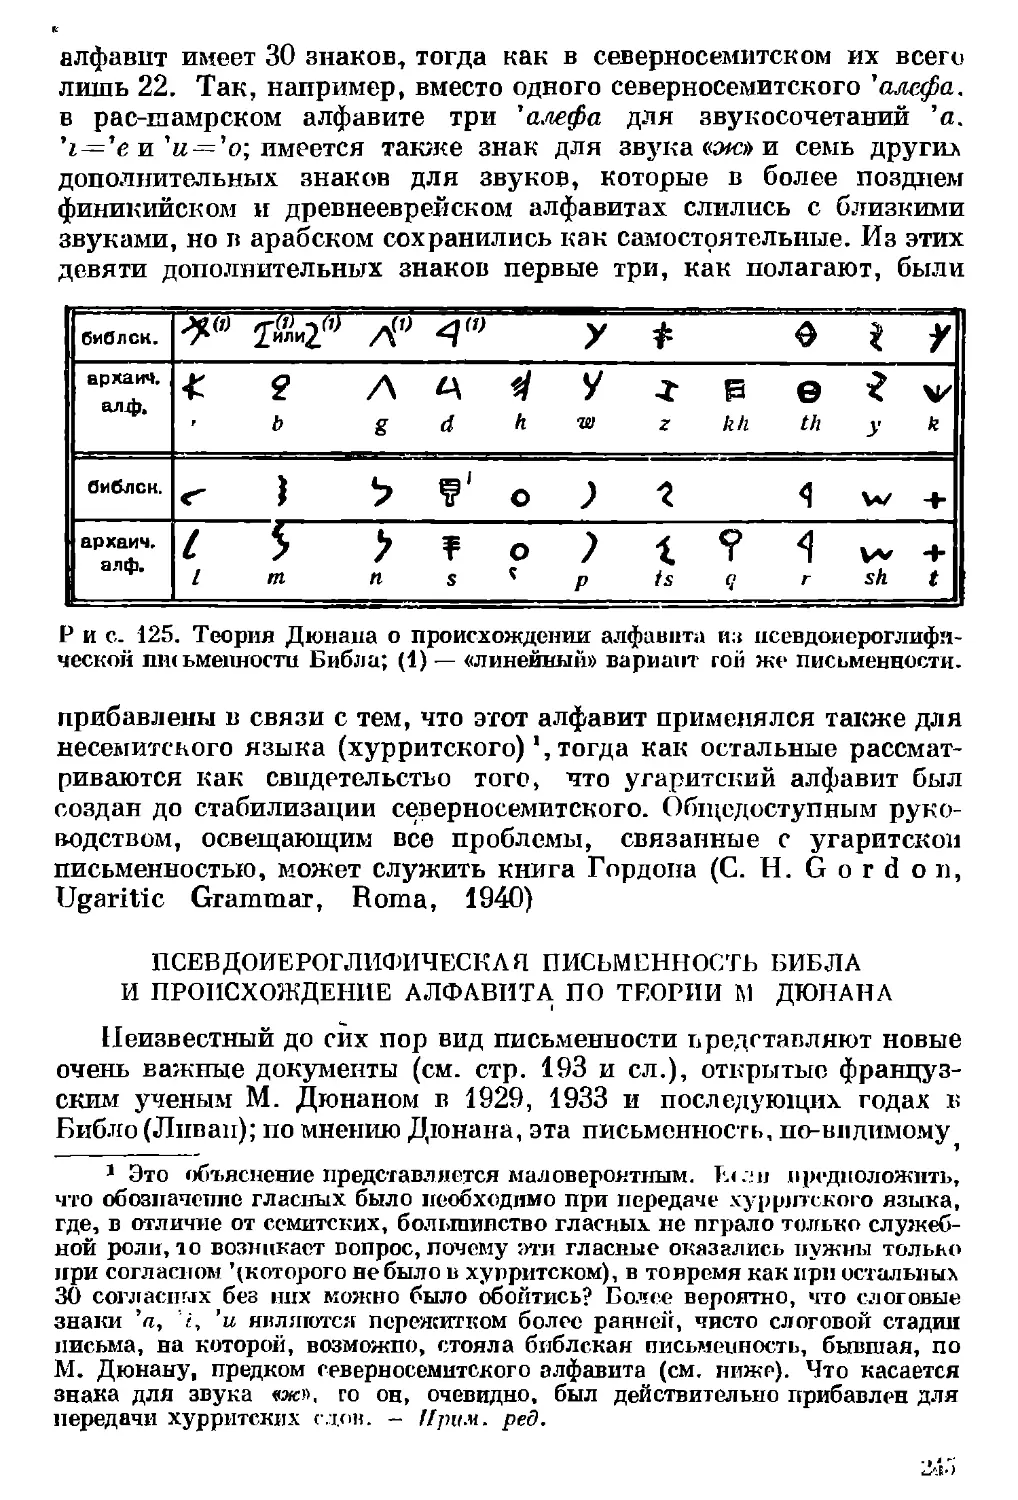 Псевдоиероглифическая письменность Библа и происхождение алфавита по теории М. Дюнана